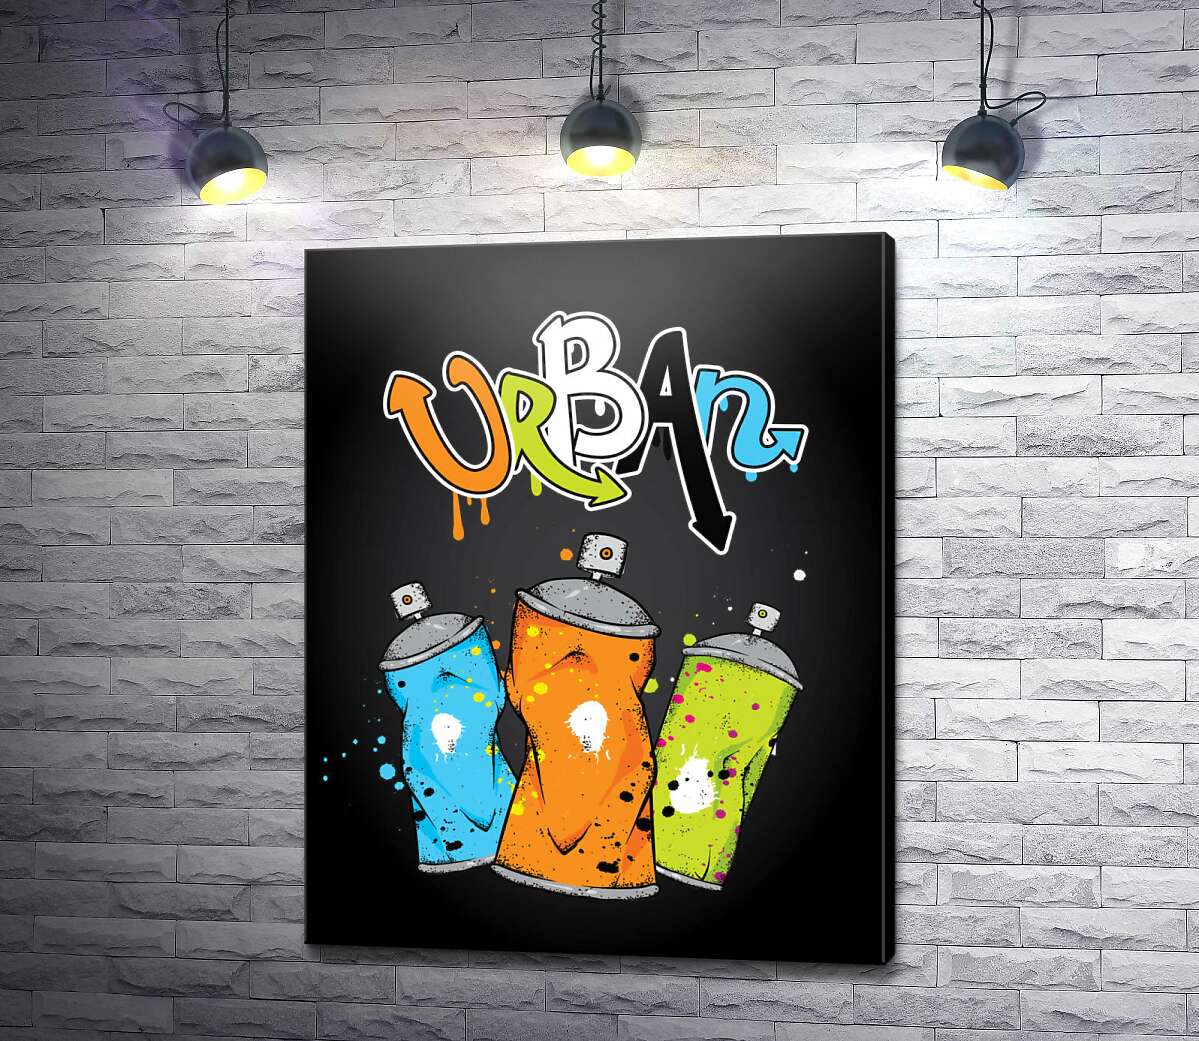 картина Граффити-надпись над баллончиками с краской: "URBAN"